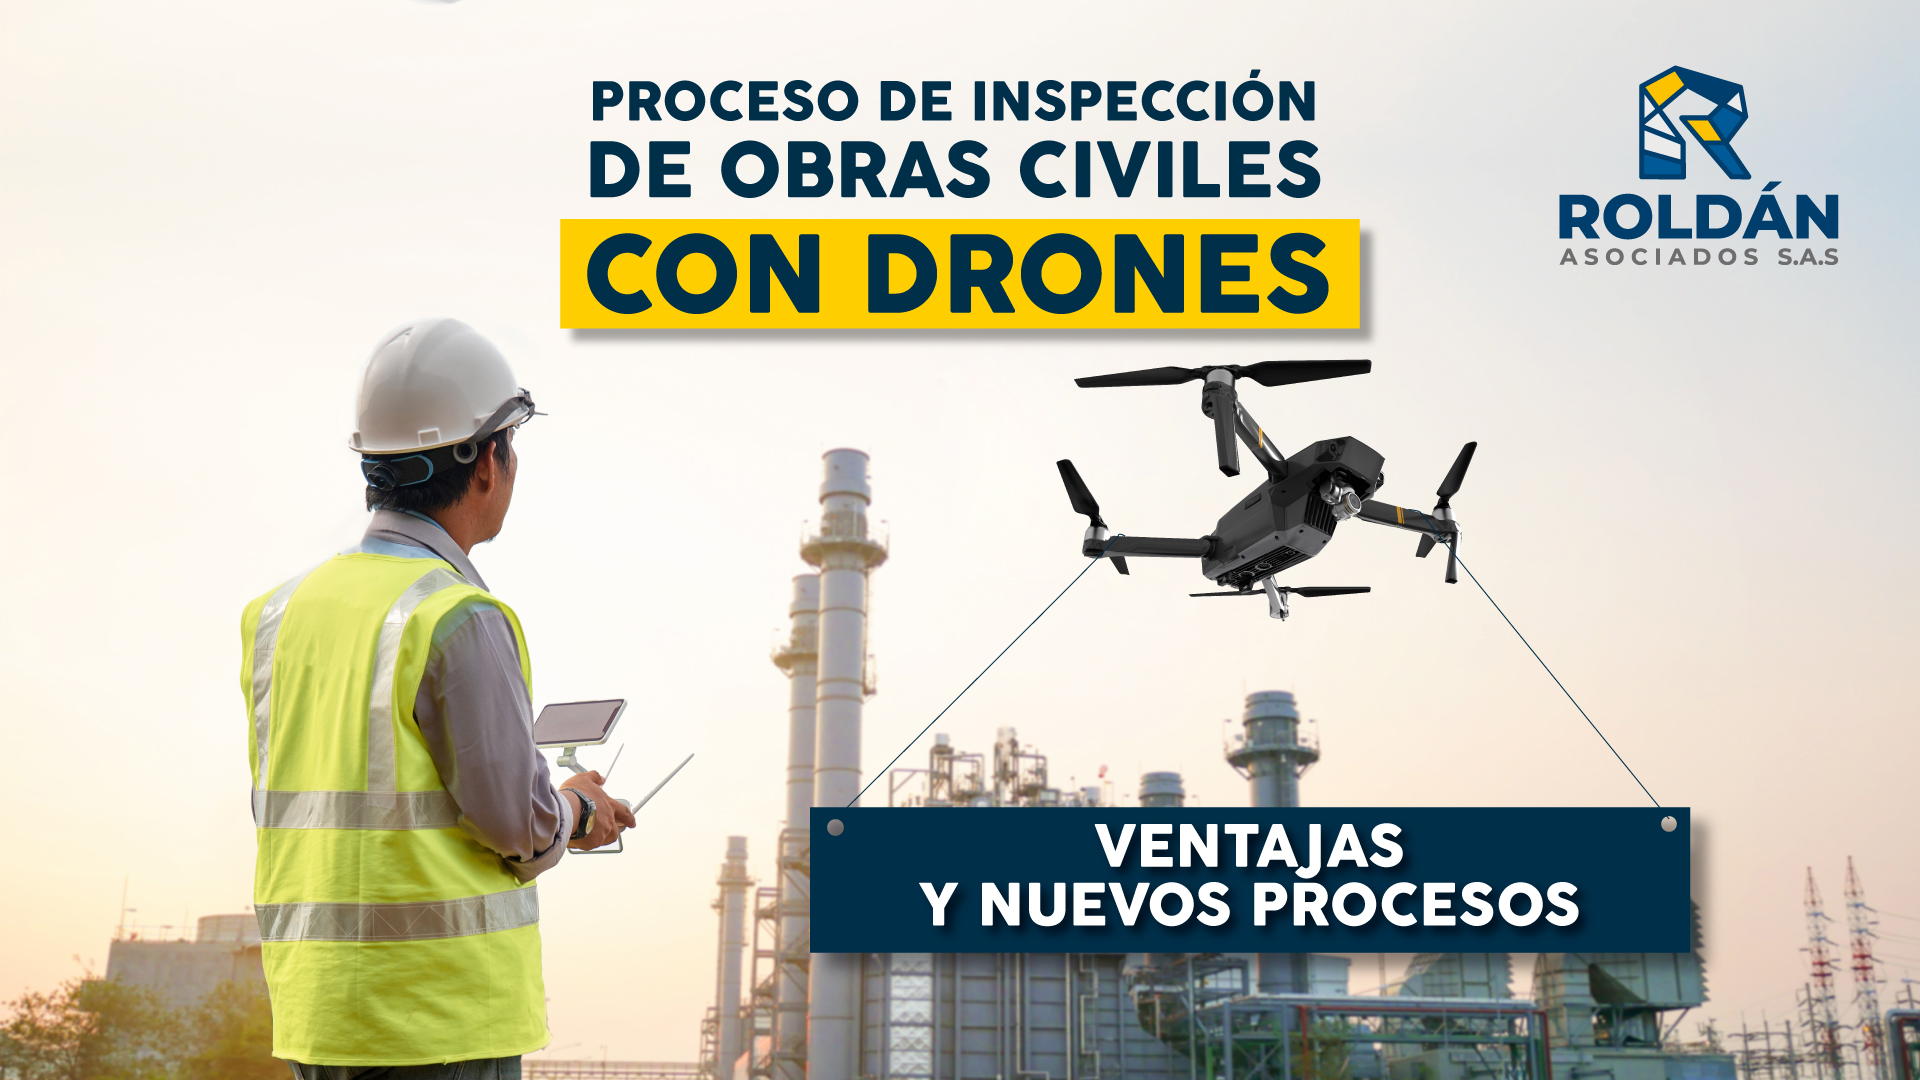 Proceso-de-inspección-de-obras-civiles-con-drones,-ventajas-y-nuevos-procesos